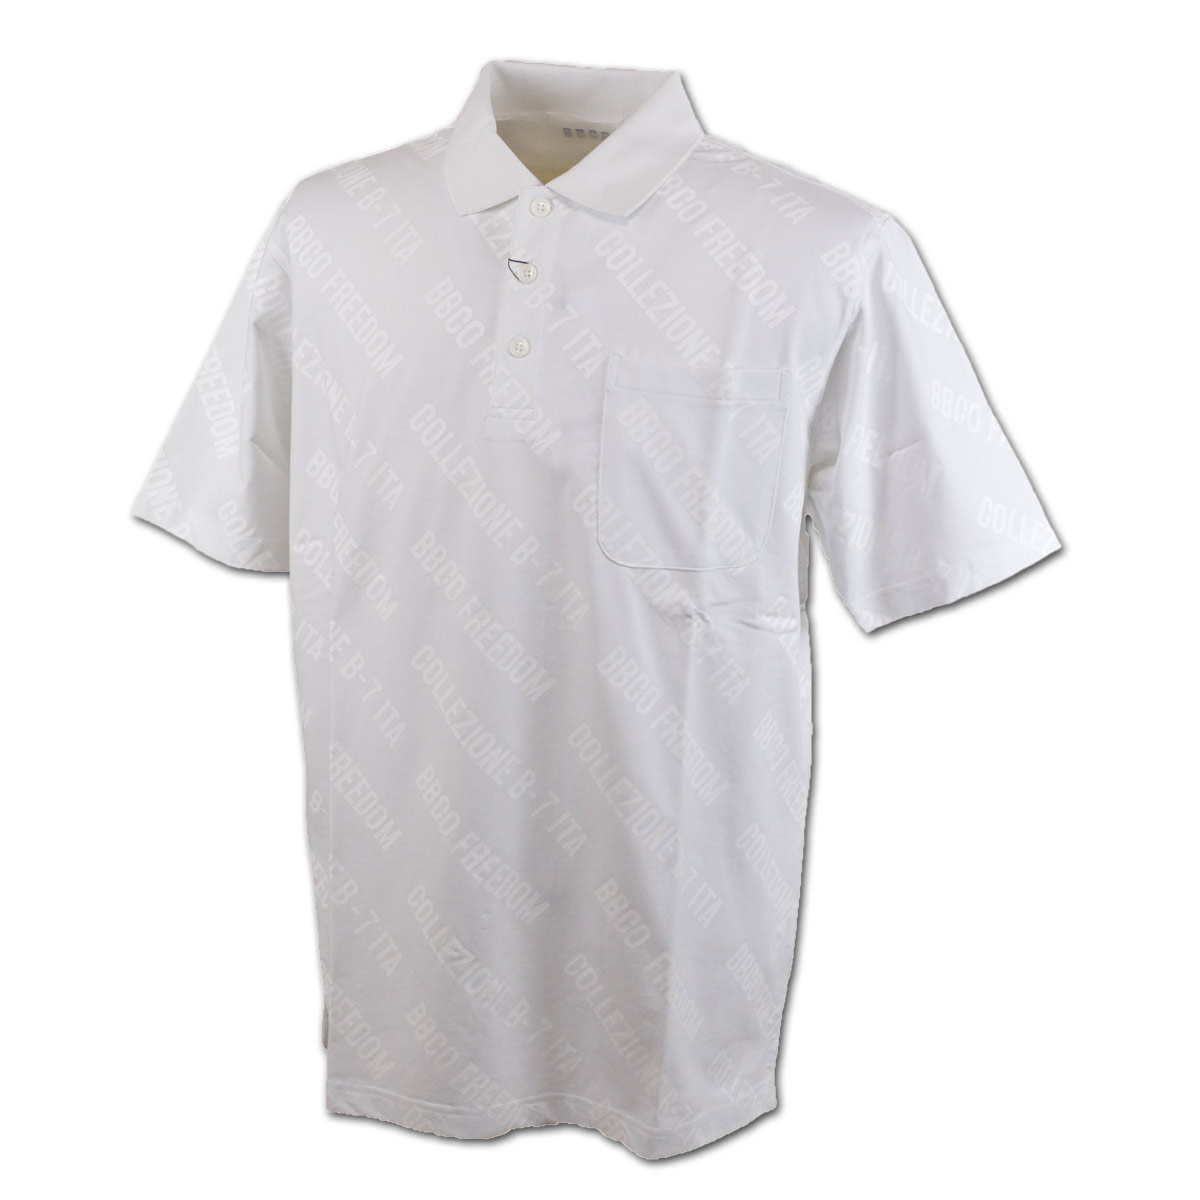 ビビコ 半袖ポロシャツ メンズ 春夏用 白 黒 M L LL 31-2803-01